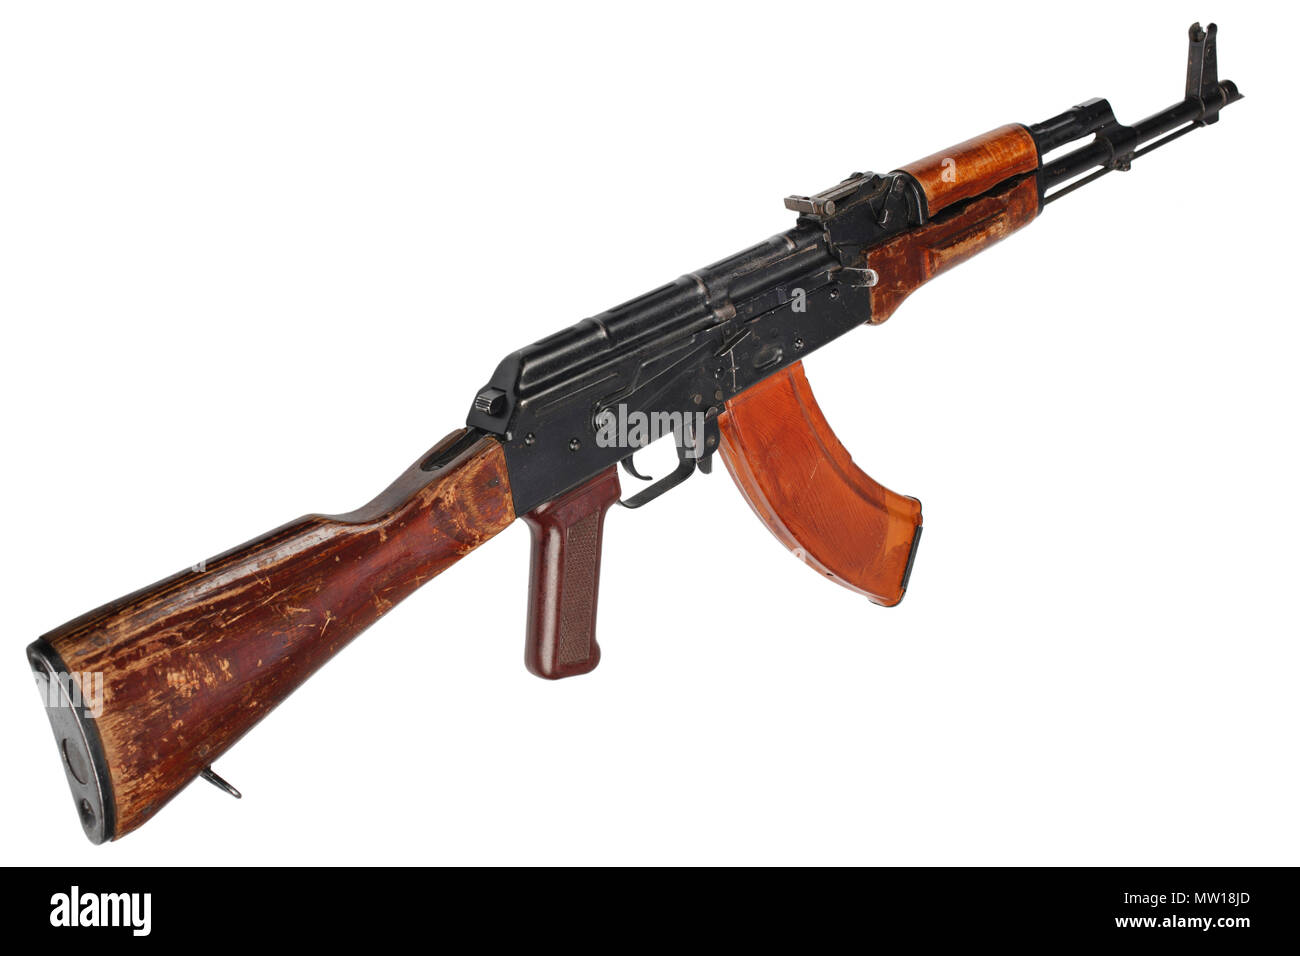 AK - 47 (AKM) assault rifle Stock Photo